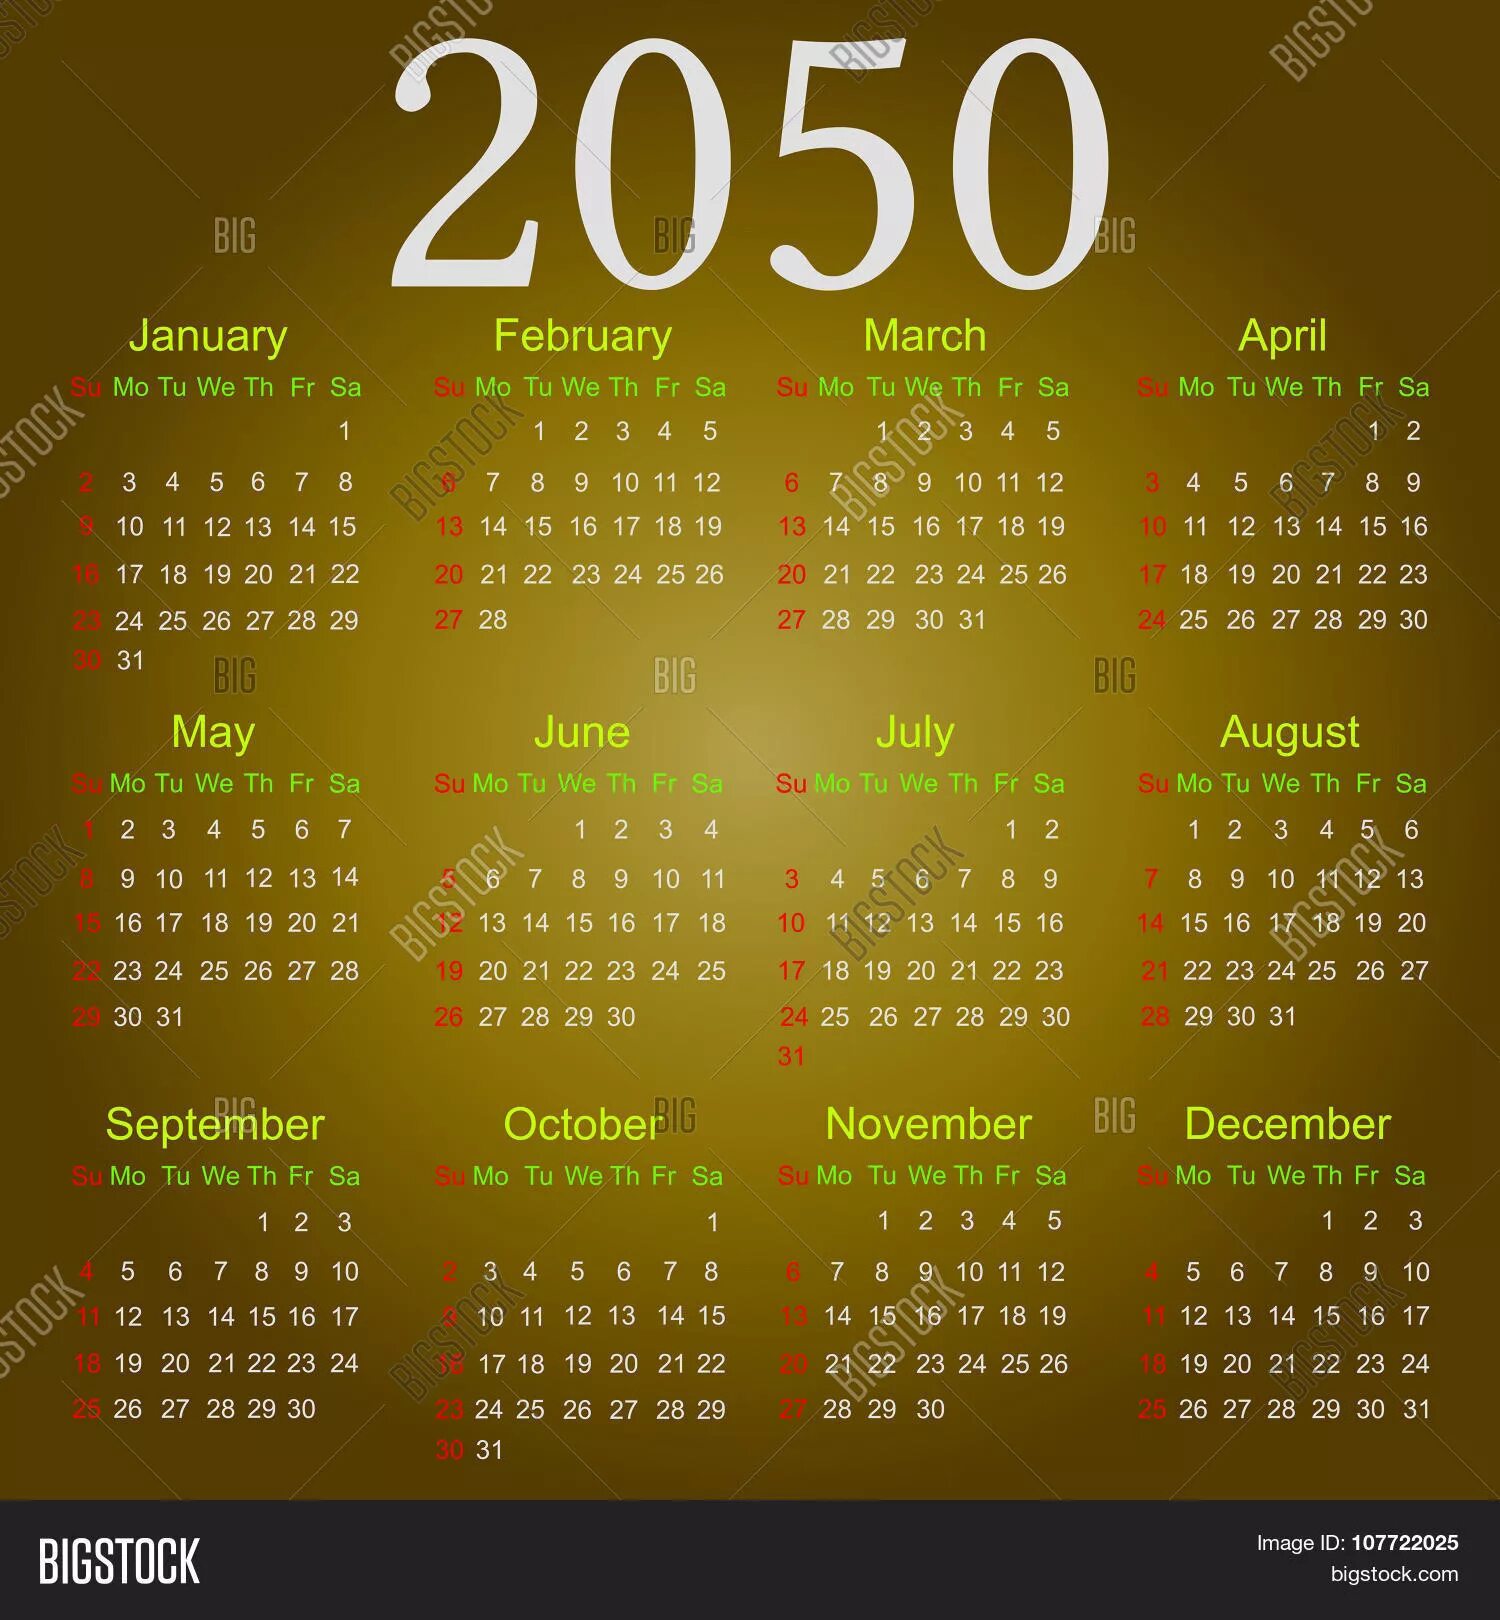 12 апреля 2050 день недели решение впр